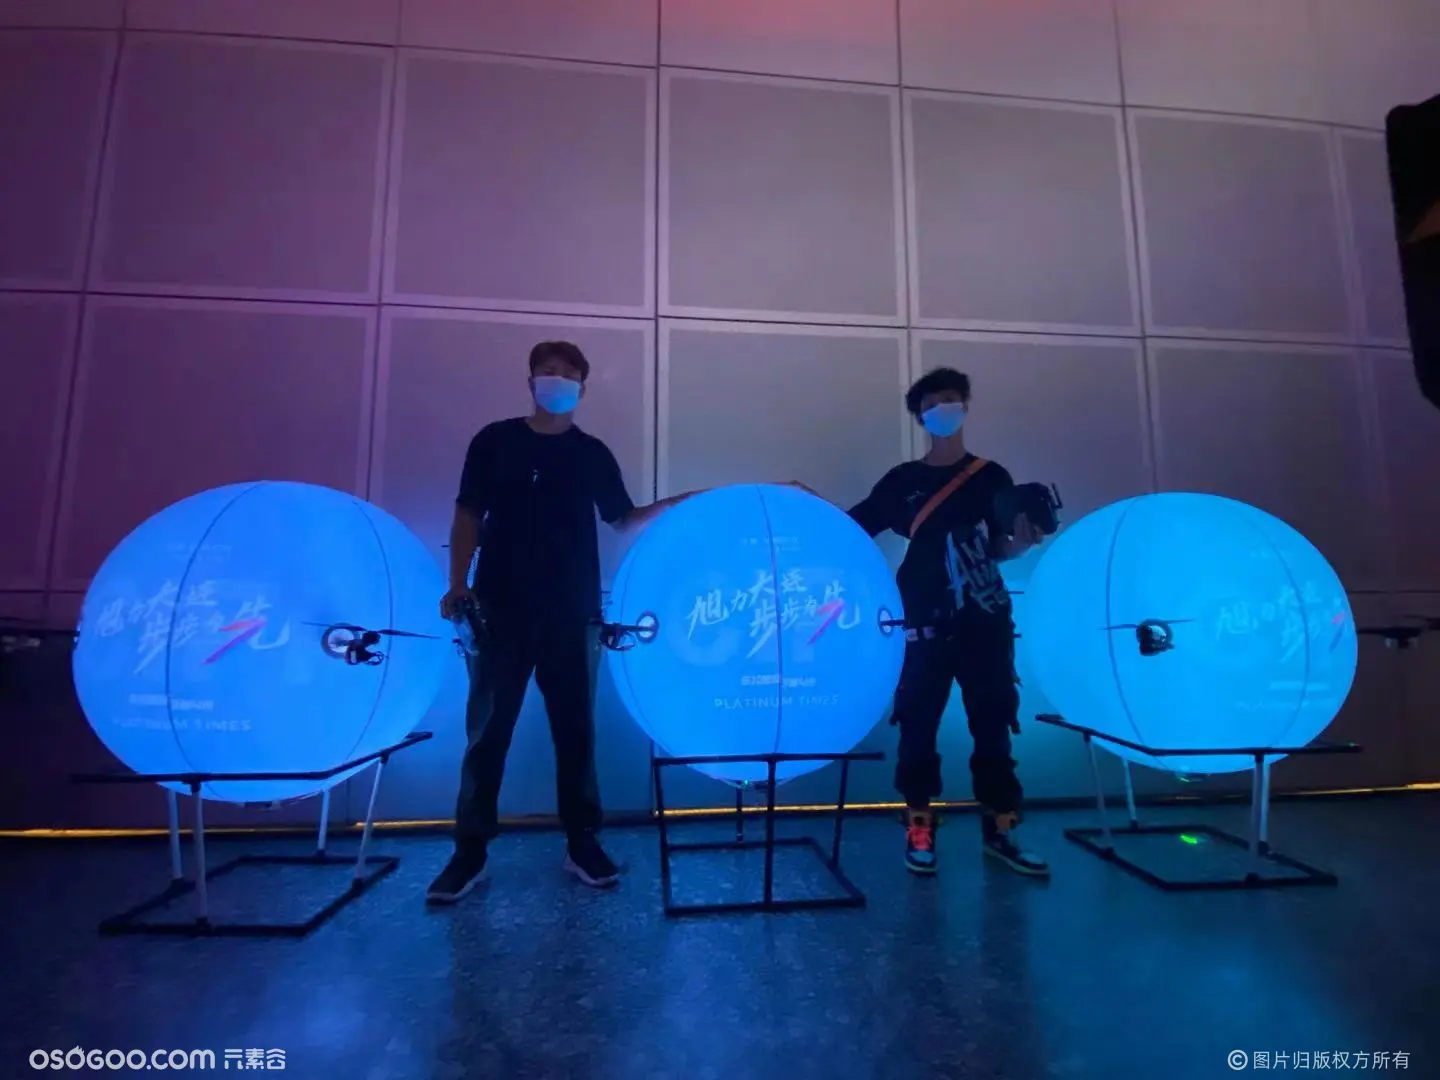 大连旭辉品牌发布会  |  科技飞行球  无人机表演 飞行